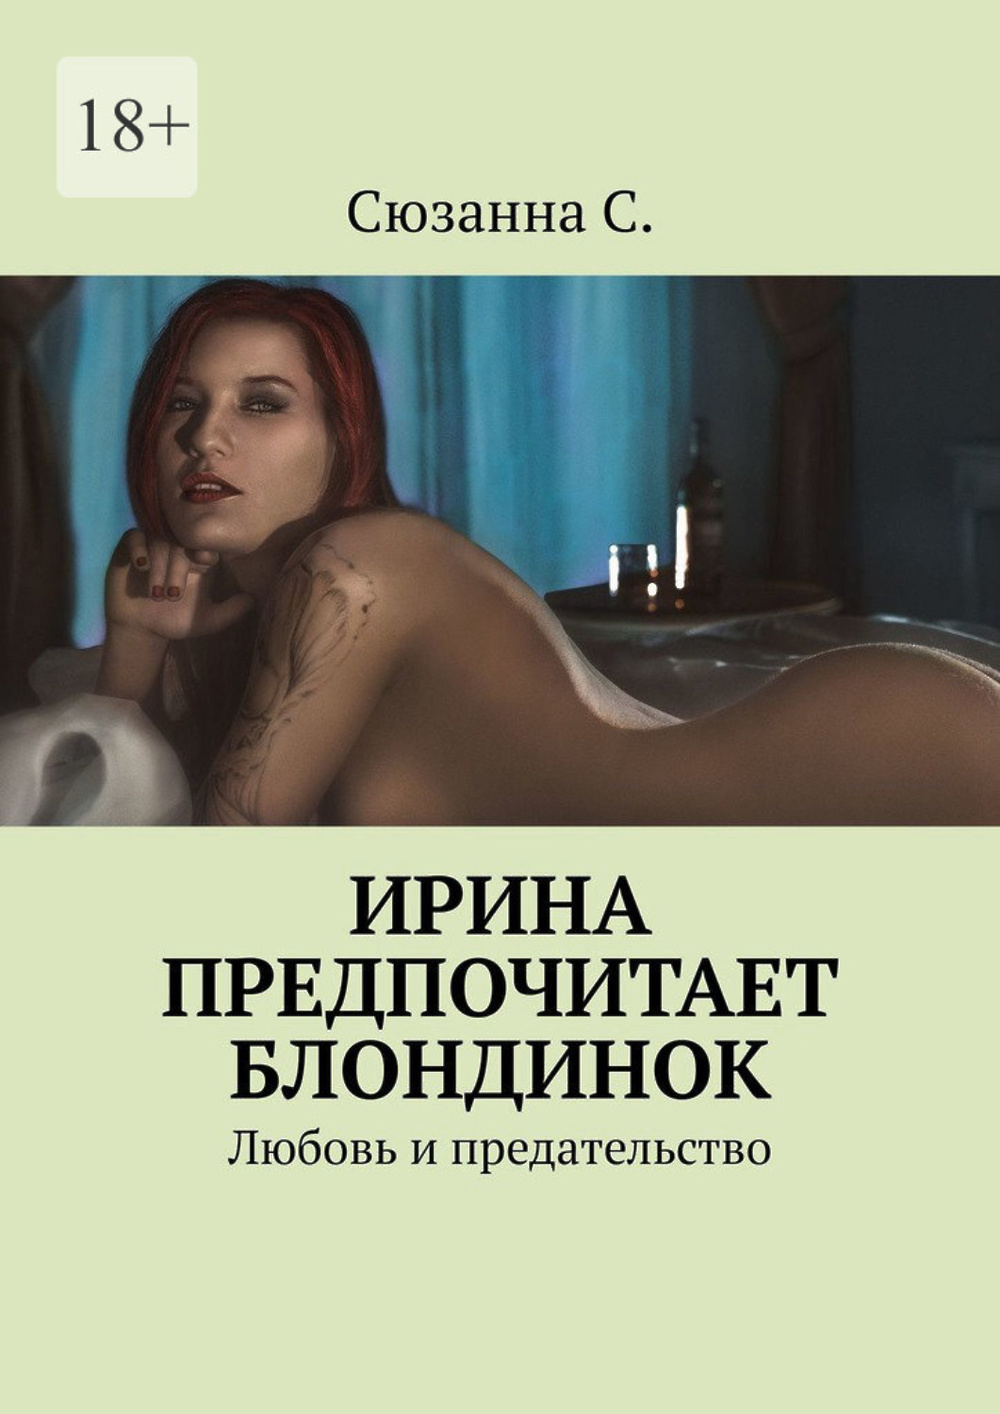 русские любовные романы про измену и предательство фото 108